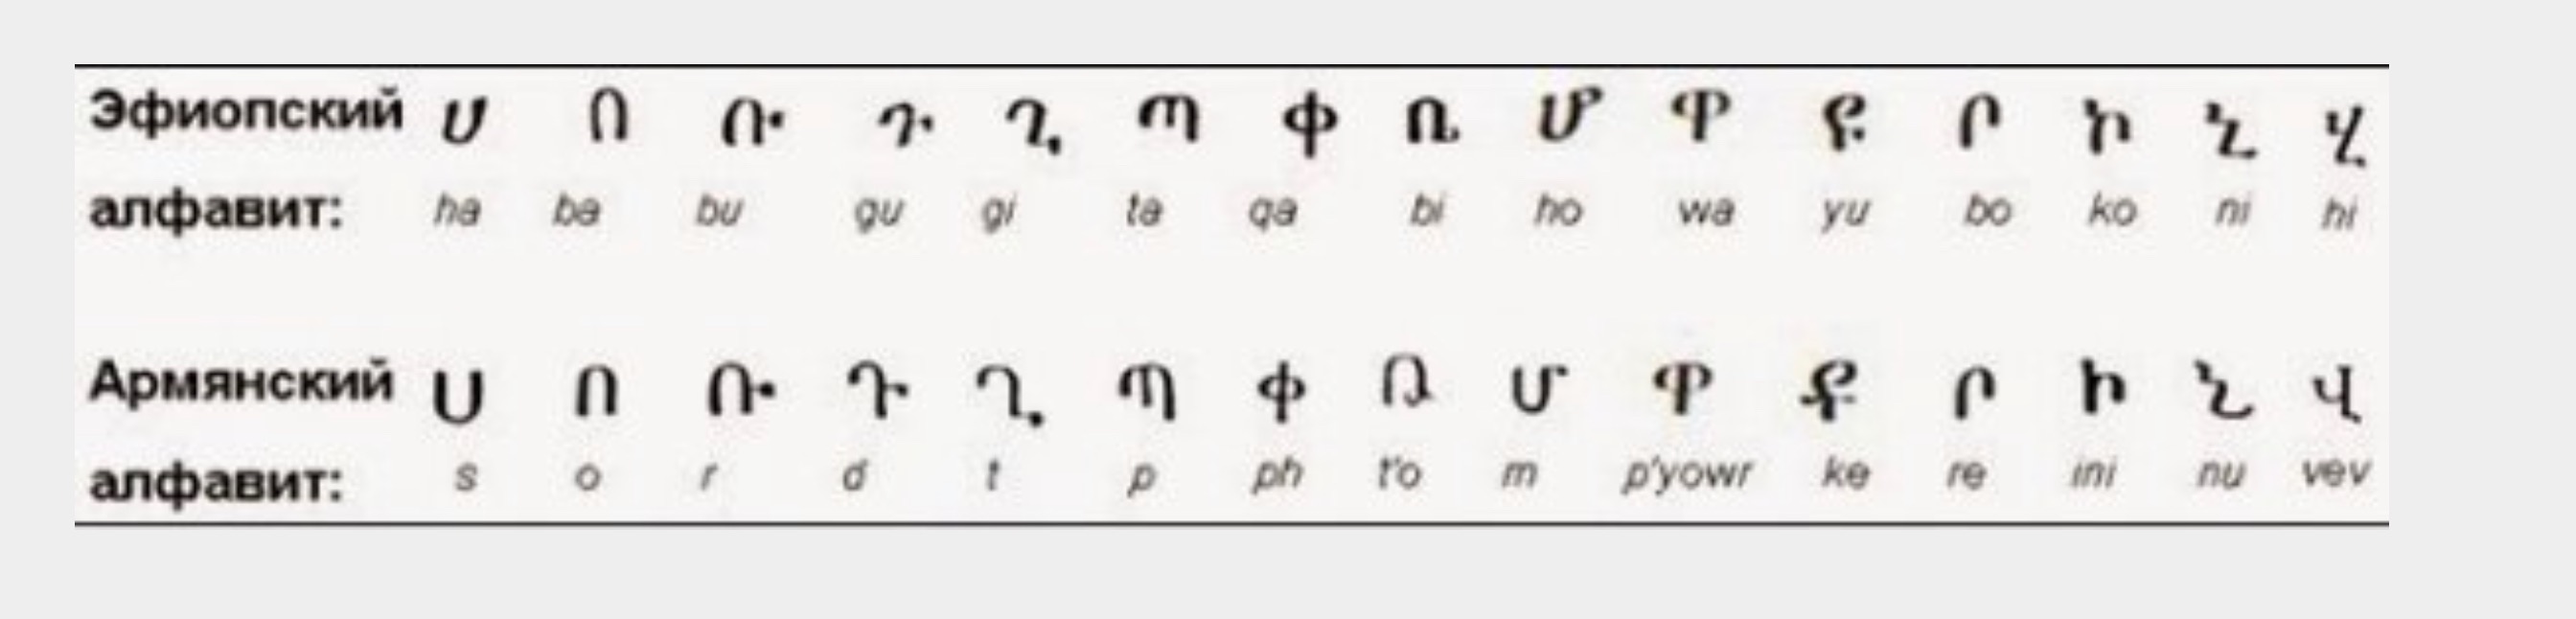 Эфиопия алфавит и армянский